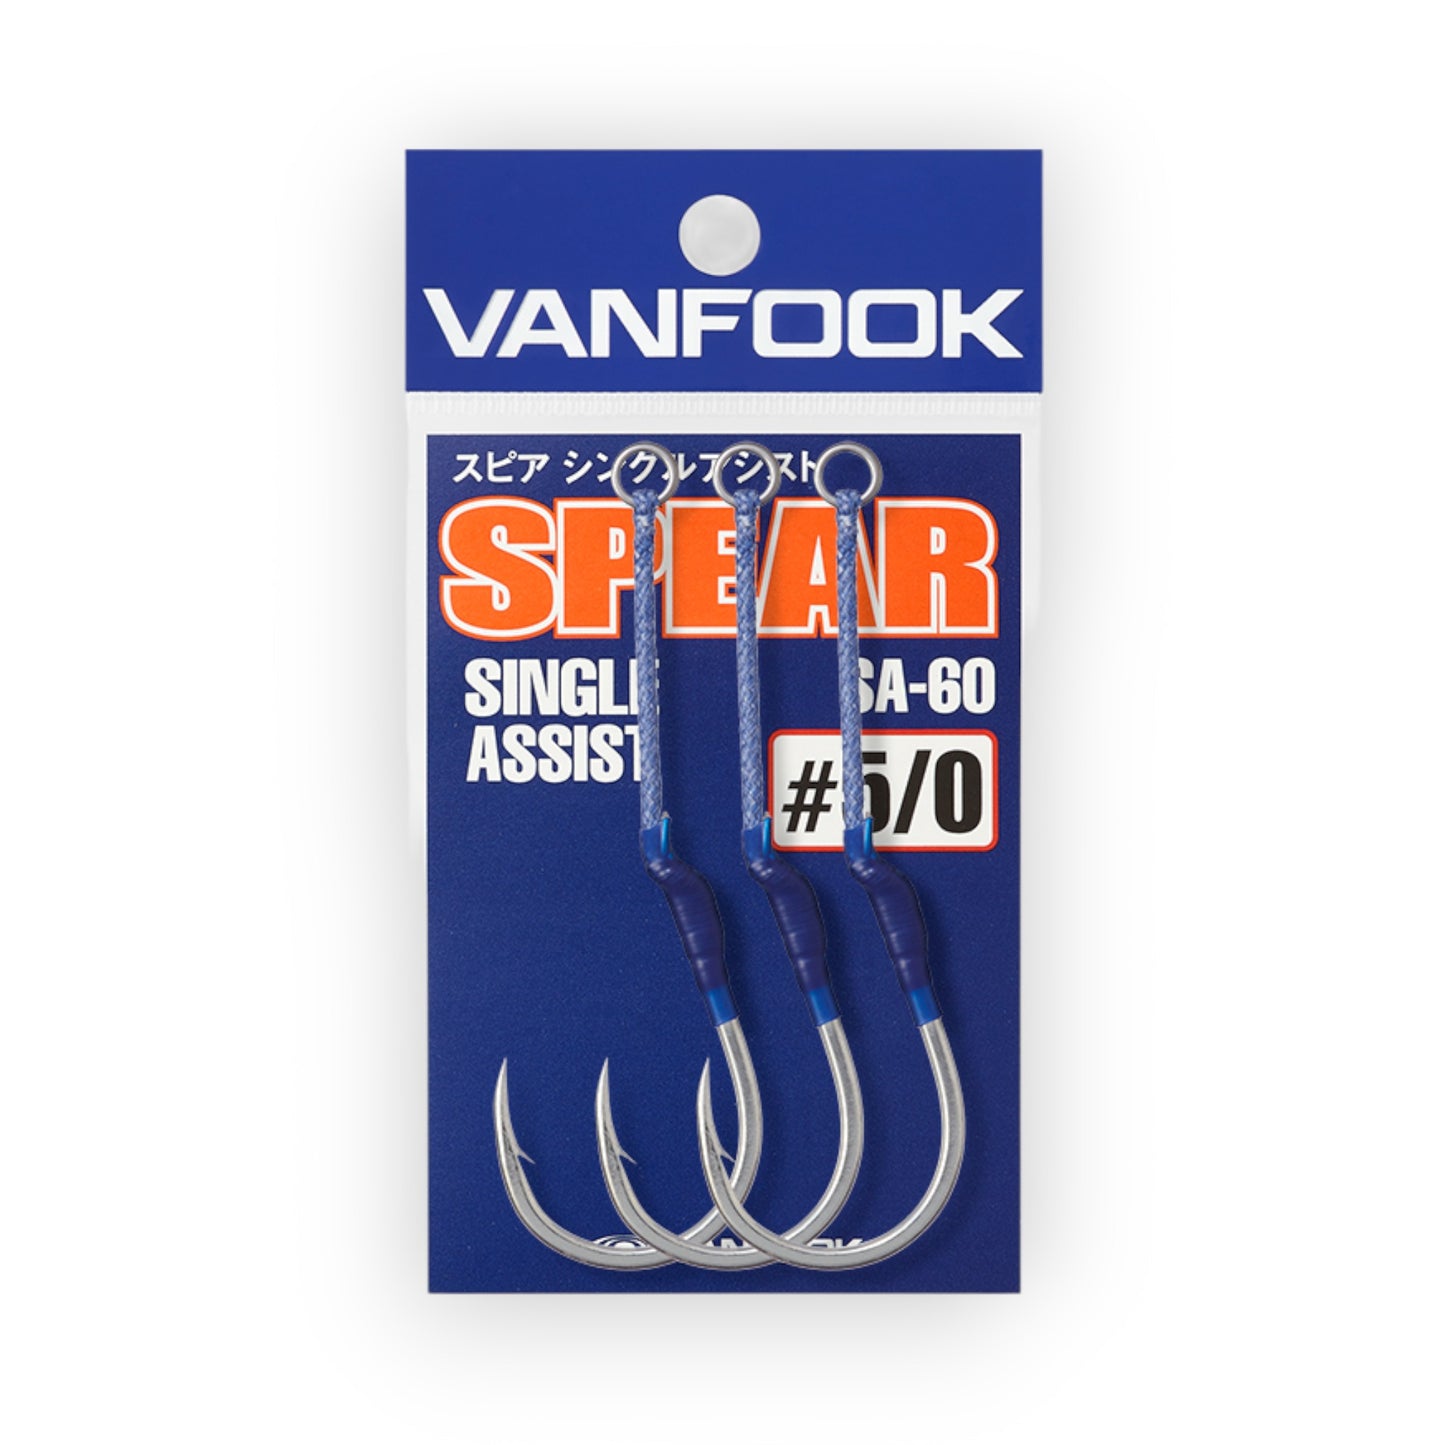 Vanfook Spear Single Assist SA-60